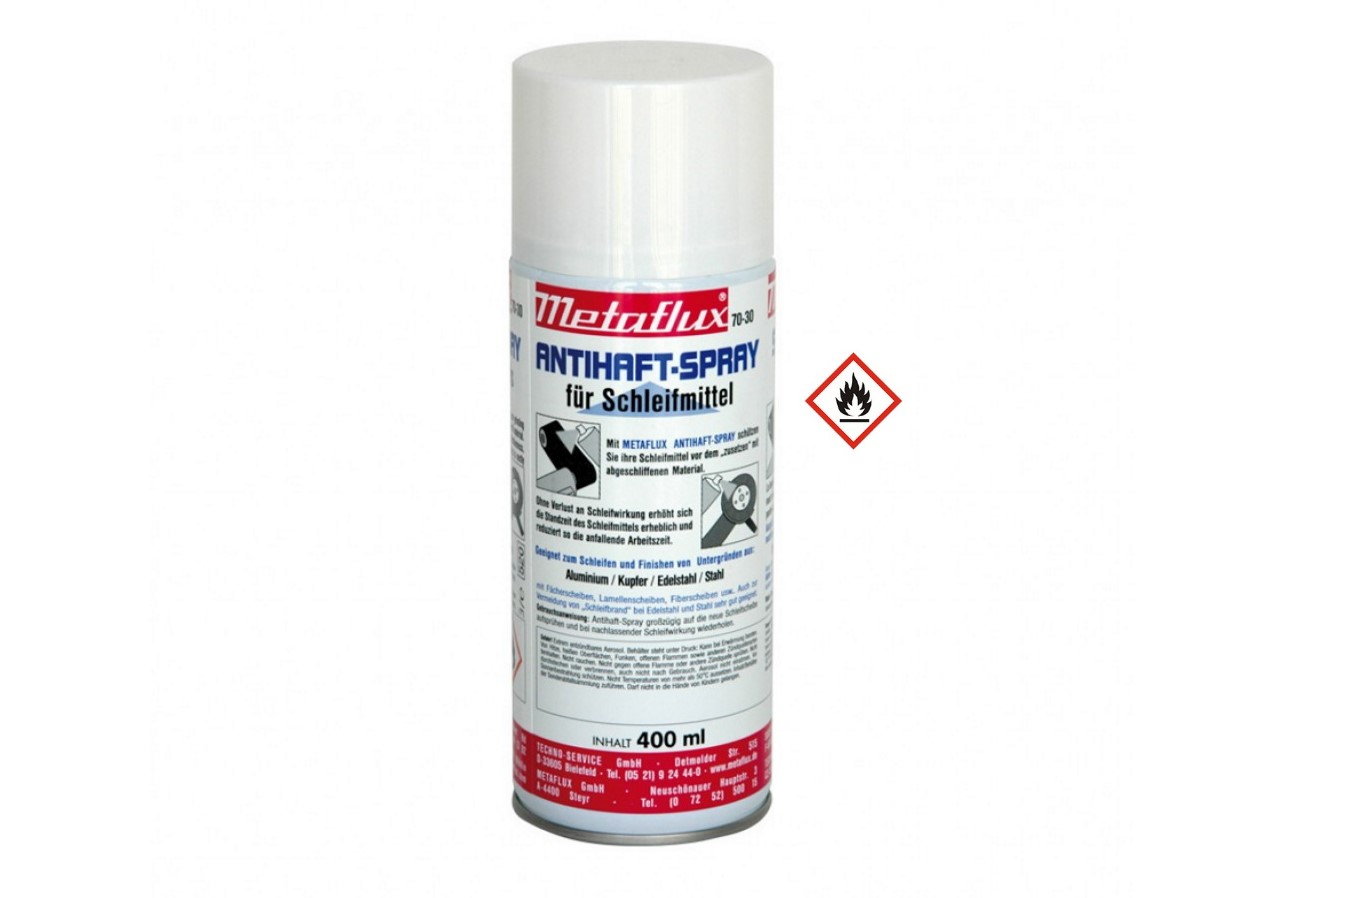 Antihaft-Spray 400ml Metaflux | 70-3000